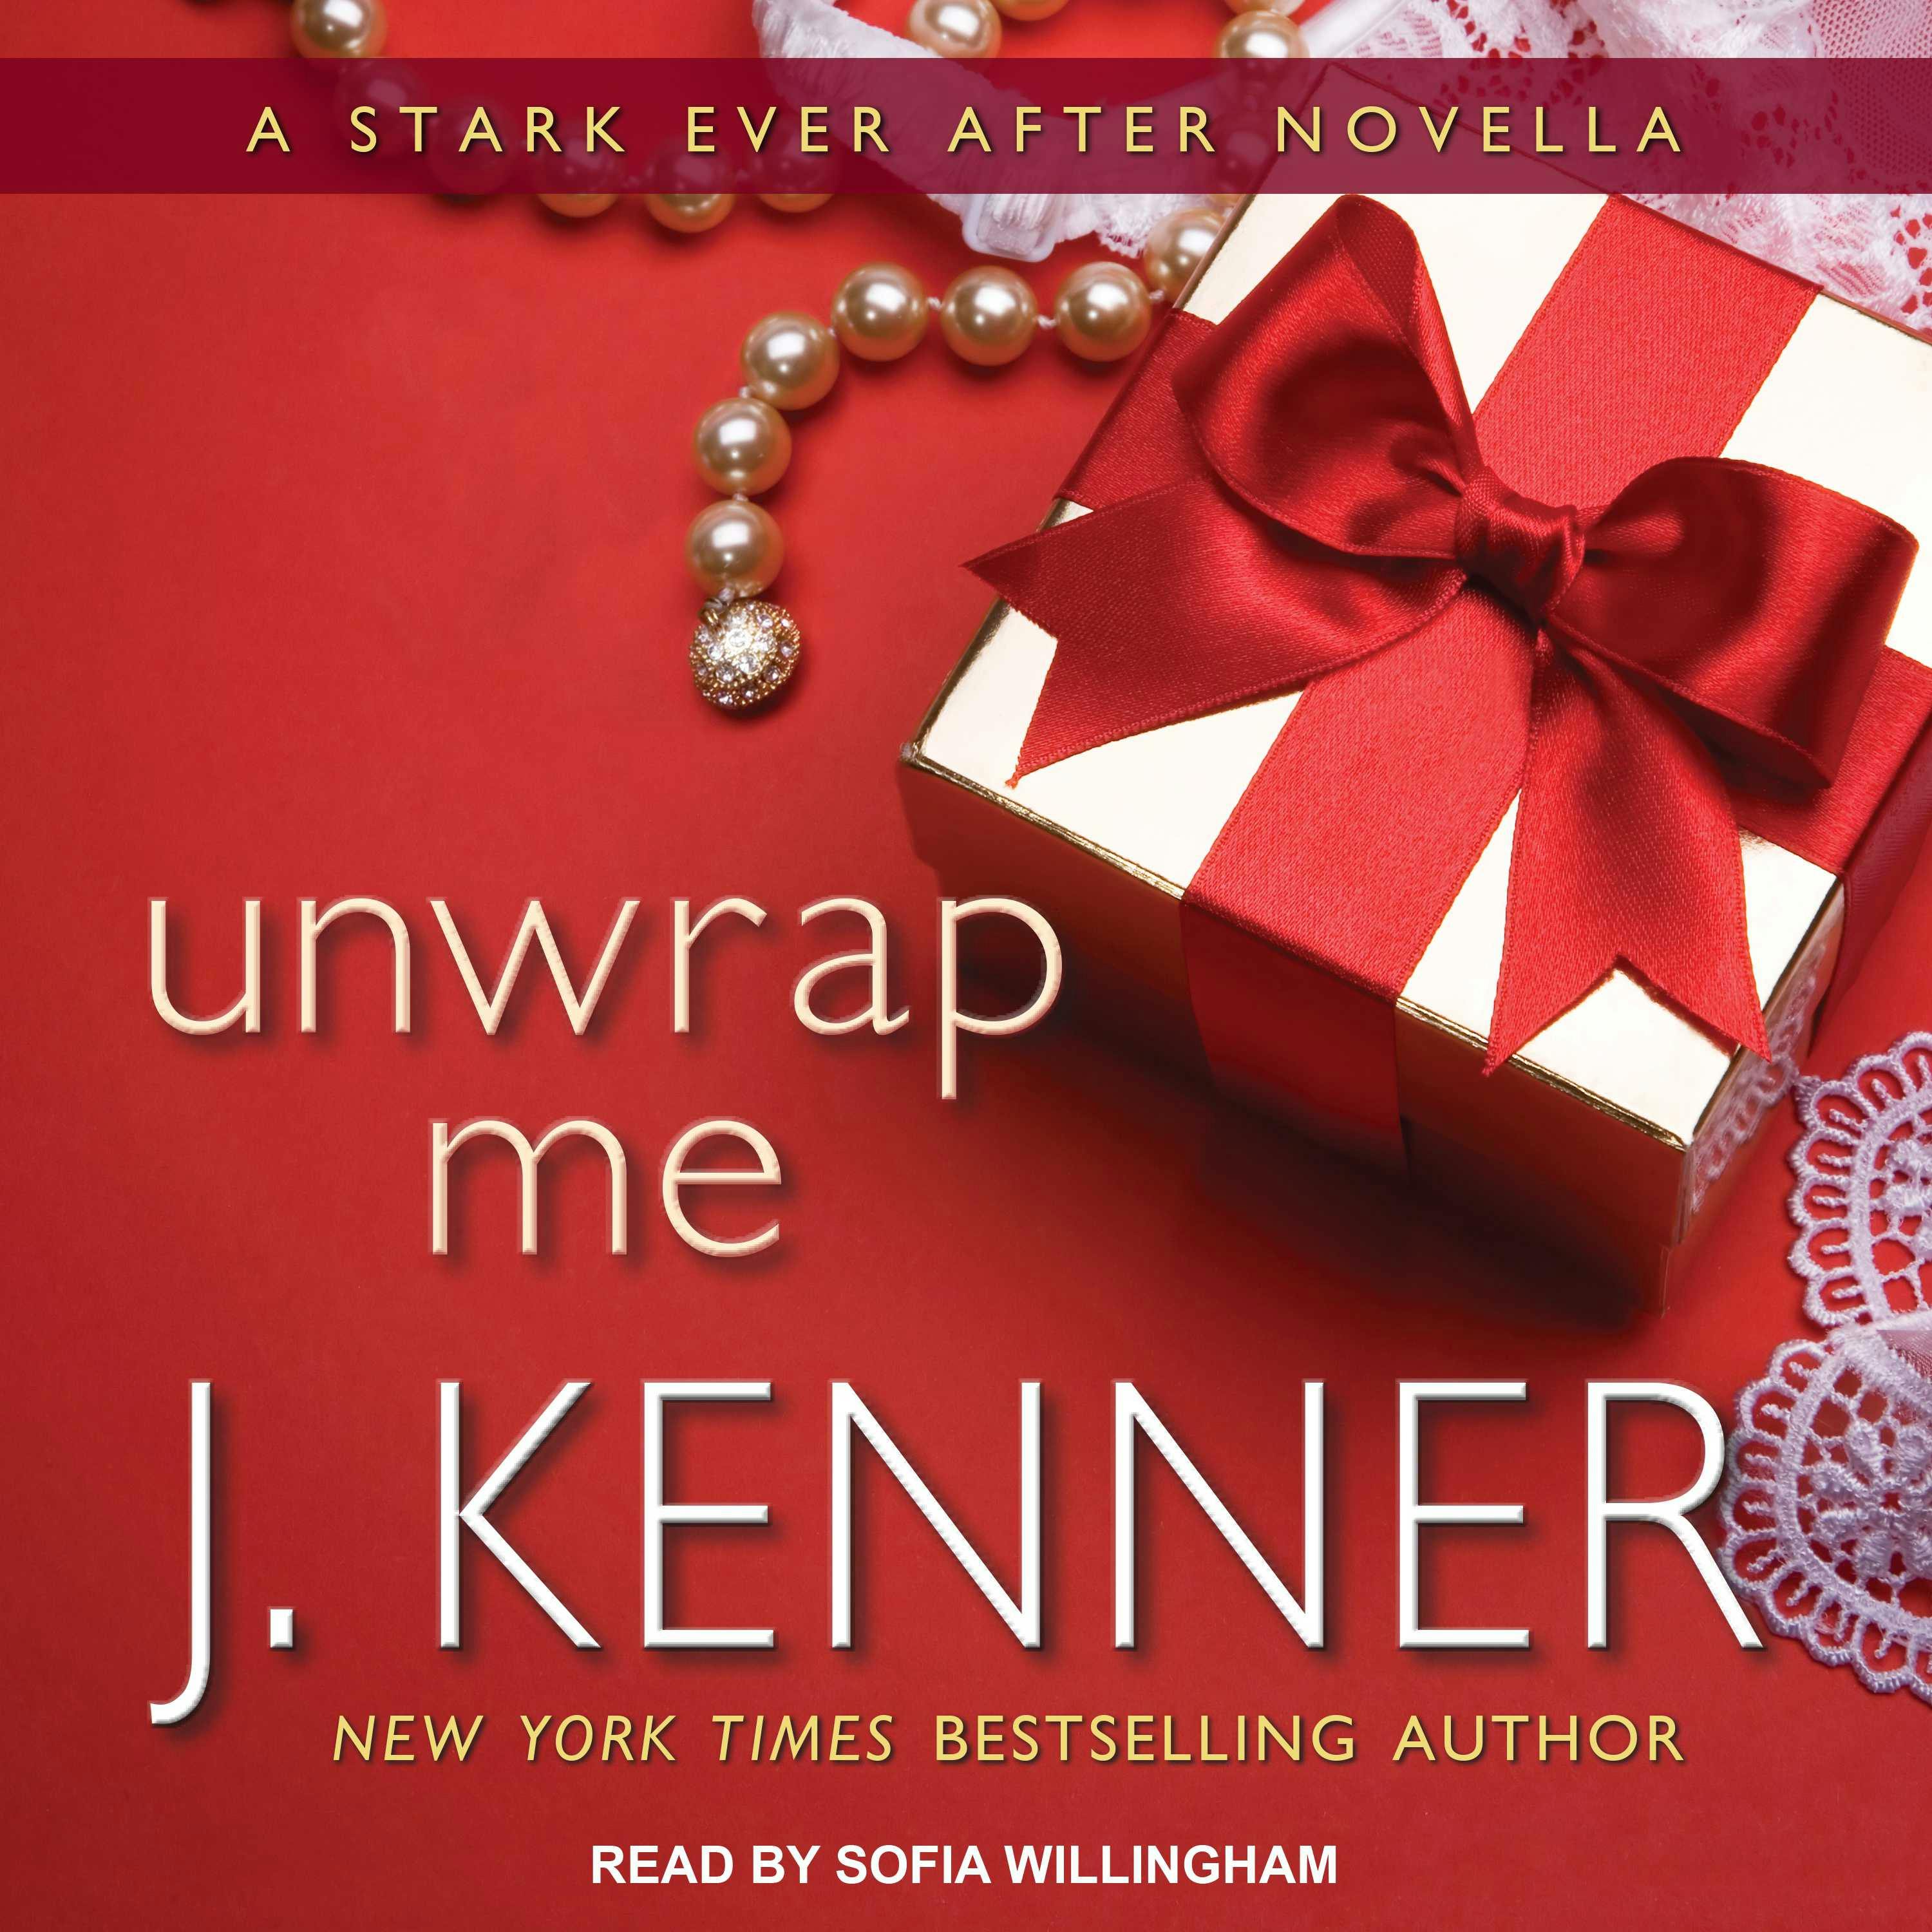 Unwrap Me: A Stark Ever After Novella - J. Kenner